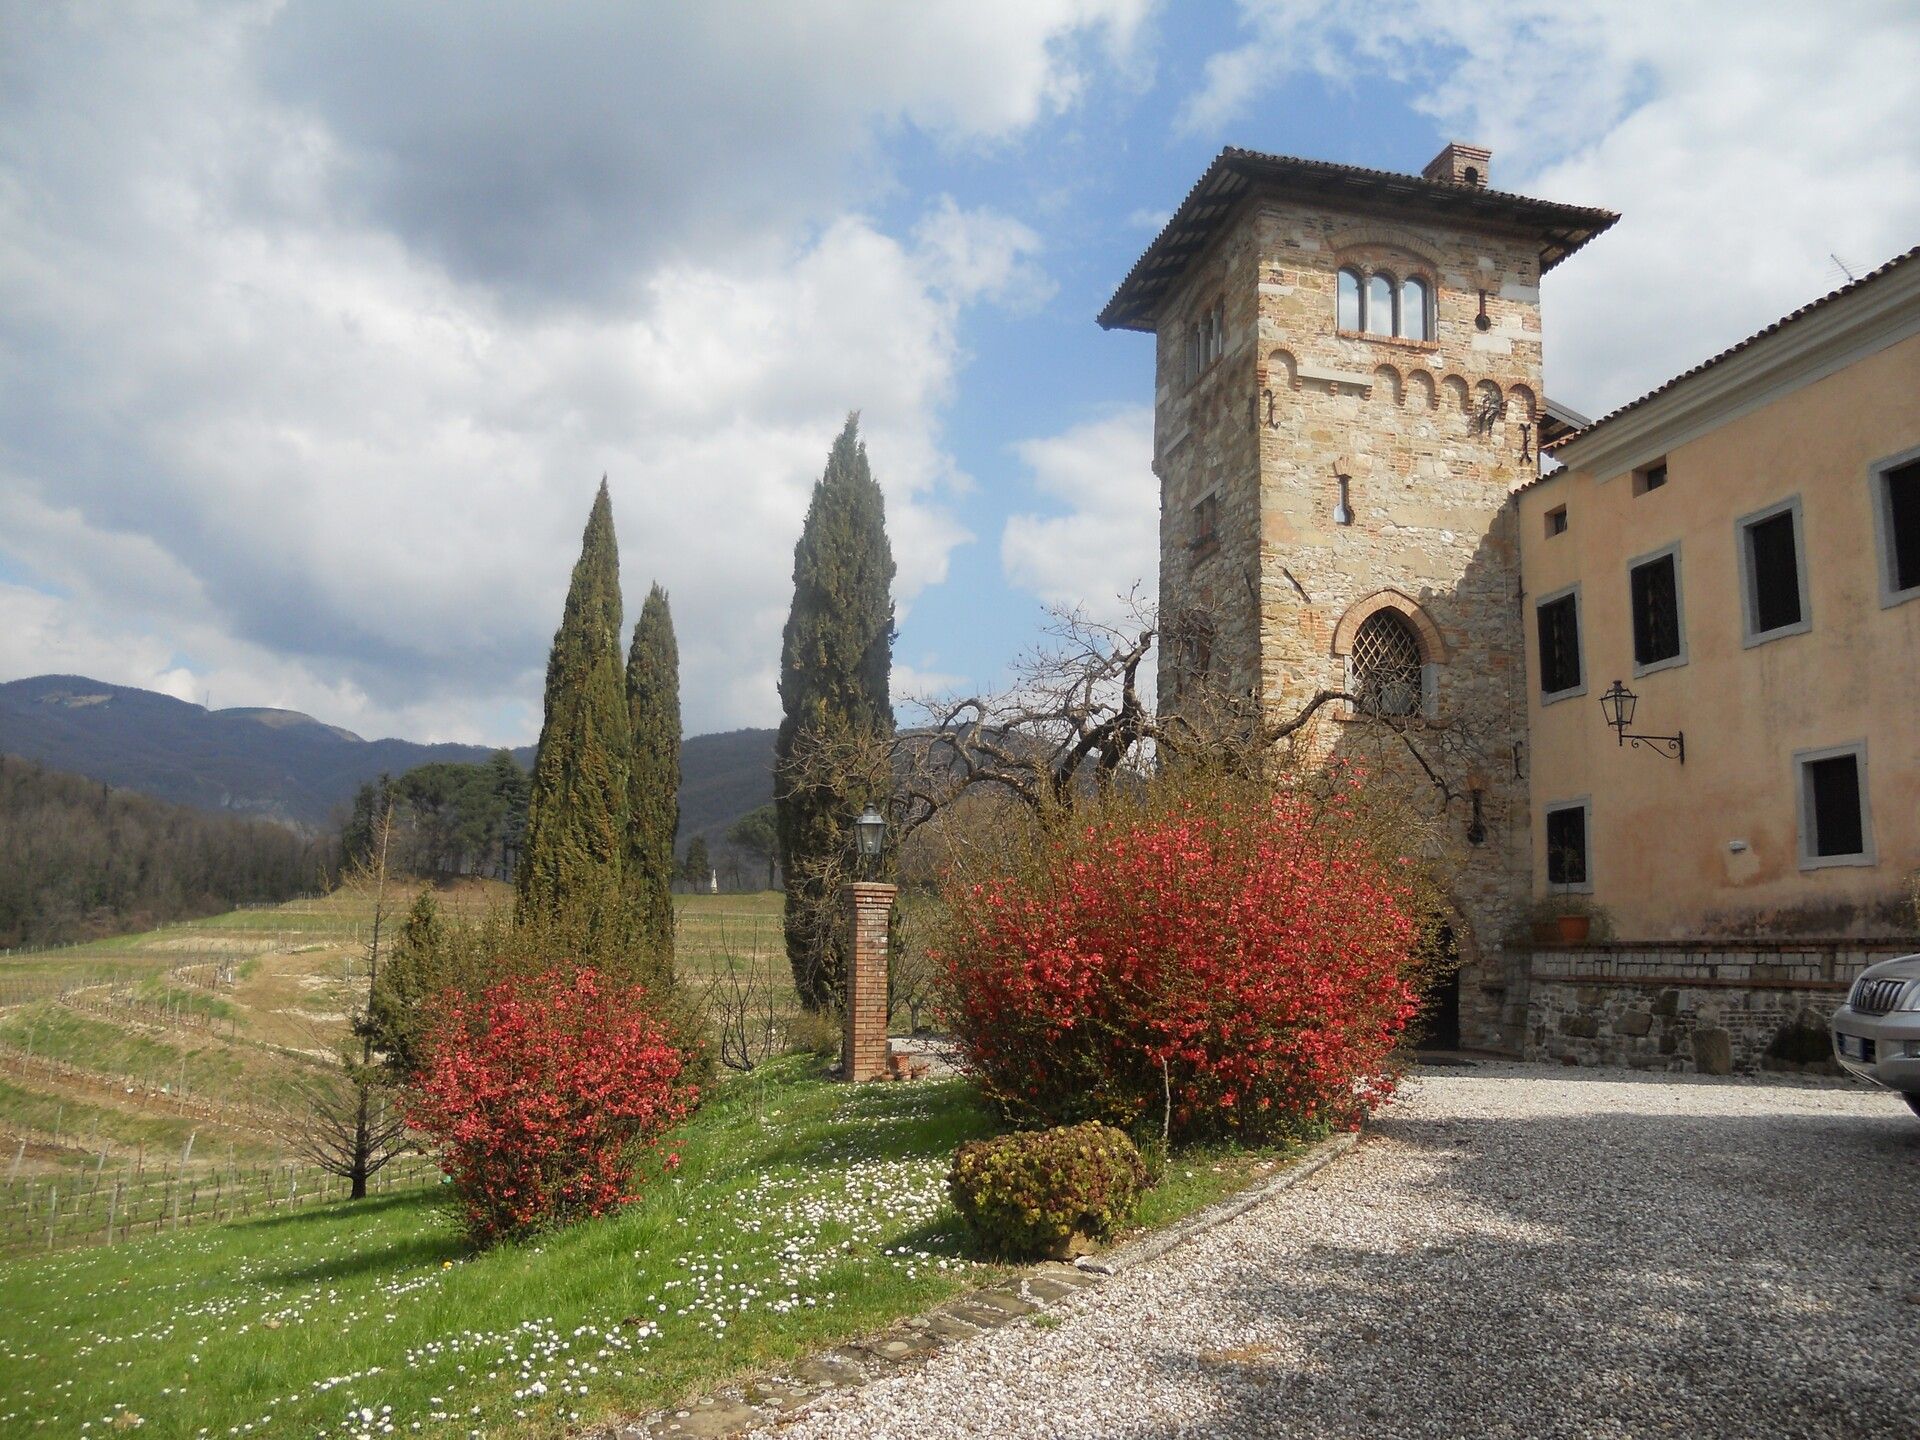 A vendre château in zone tranquille Torreano Friuli-Venezia Giulia